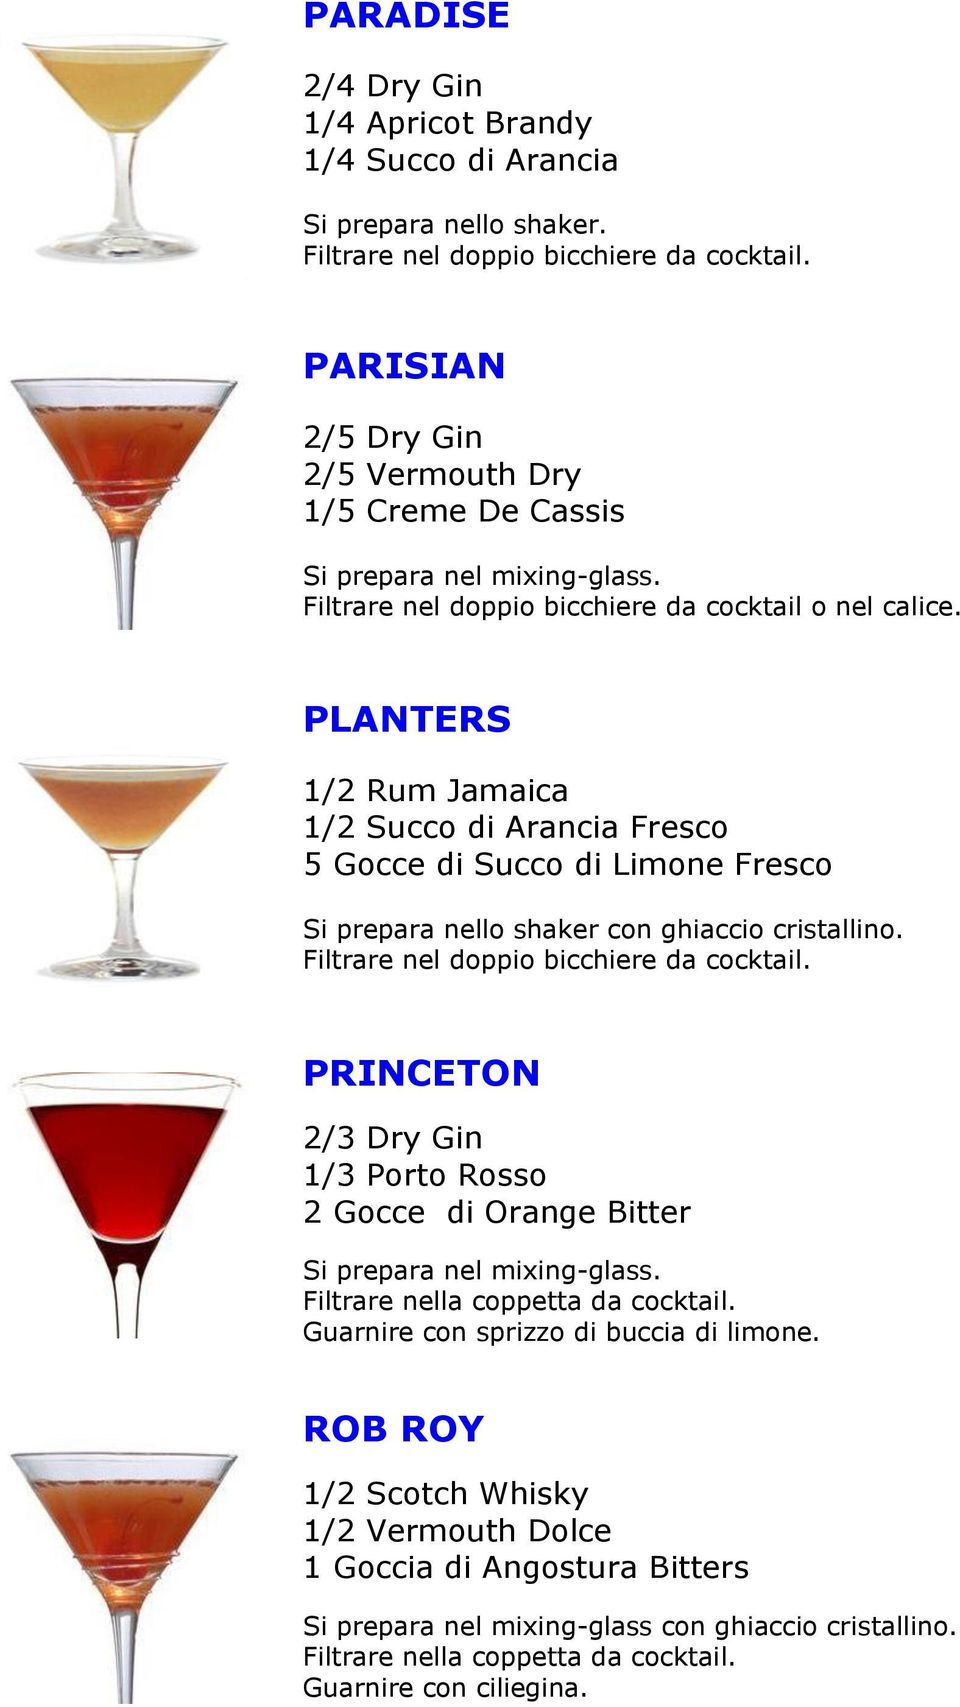 Fresco Filtrare nel doppio bicchiere da cocktail.